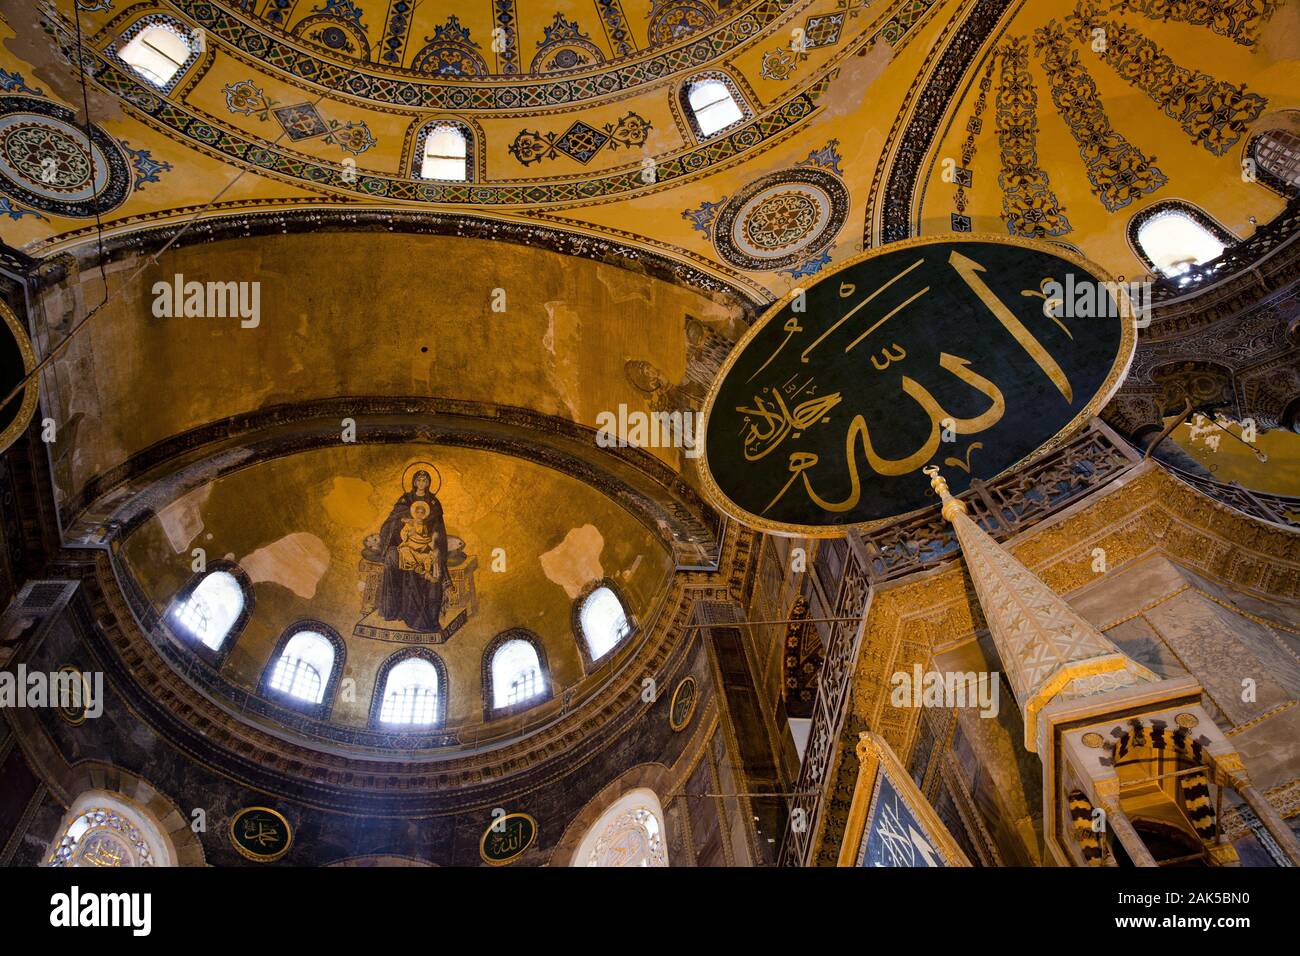 Stadtteil Sultanahmet: Hagia Sophia, Mutter Gottes-Mosaik in der Apsis des Hauptschiffs, Istanbul | usage worldwide Stock Photo